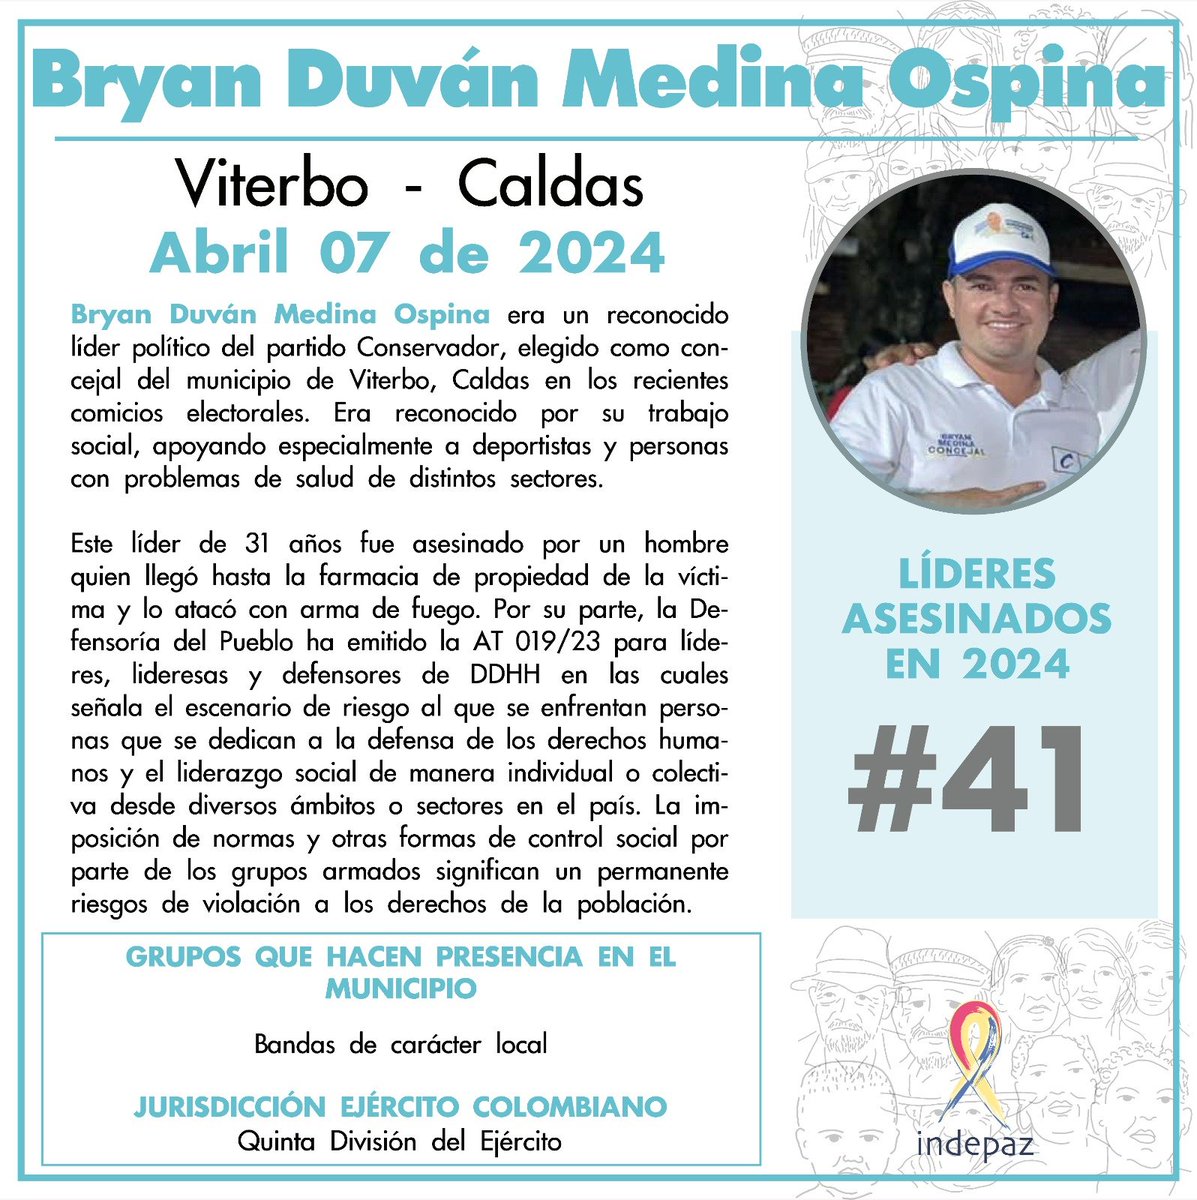 Bryan Duván Medina Ospina 07/04/24 Viterbo, Caldas Bryan Duván Medina Ospina era un reconocido líder político del partido Conservador, elegido como concejal del municipio de Viterbo, Caldas en los recientes comicios electorales. Era reconocido por su trabajo social.